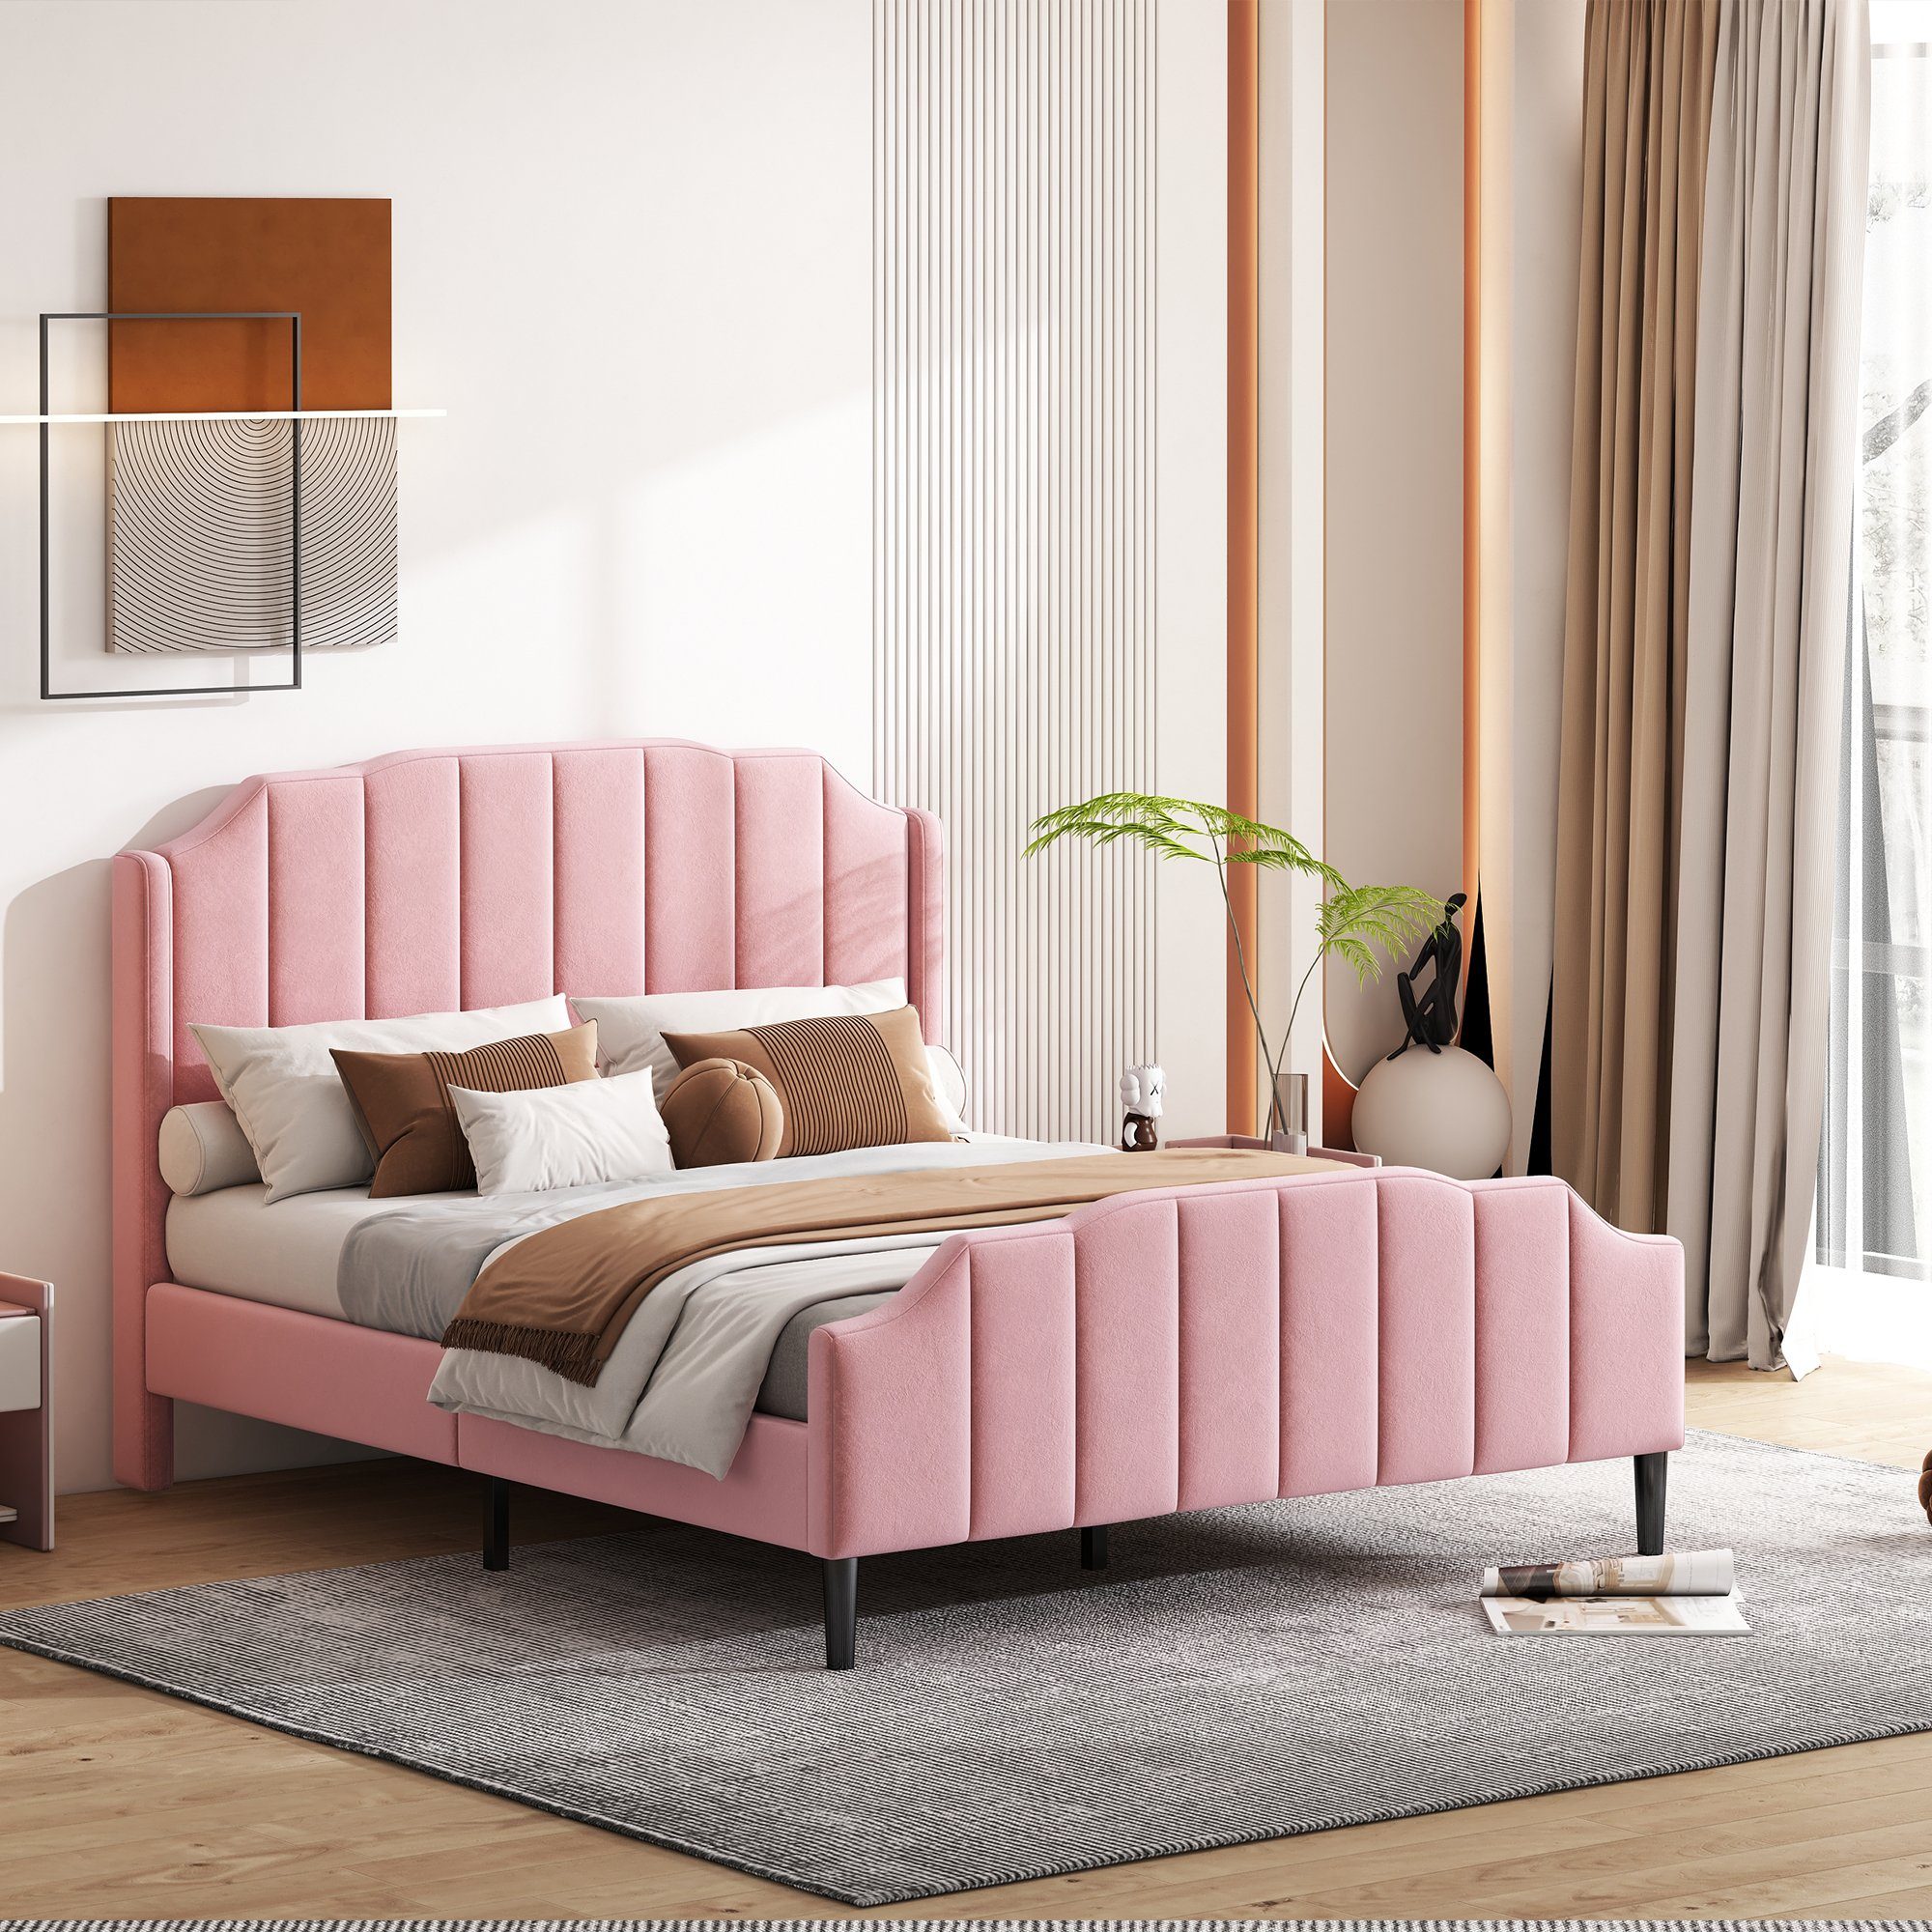 Flieks Kinderbett Doppelbett Samt Lattenrost 140x200cm Polsterbett, rosa mit